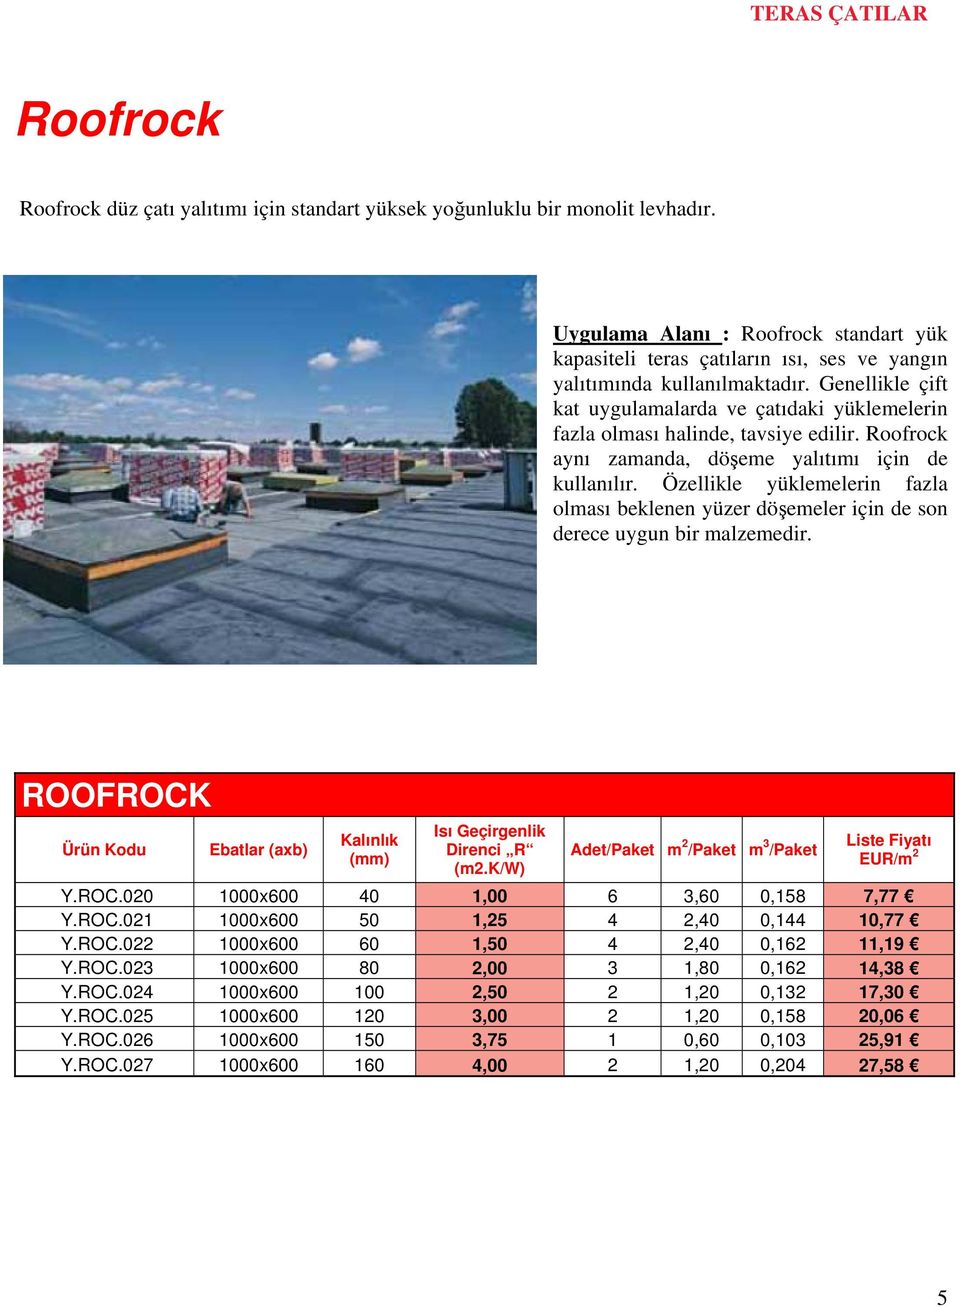 Genellikle çift kat uygulamalarda ve çatıdaki yüklemelerin fazla olması halinde, tavsiye edilir. Roofrock aynı zamanda, döşeme yalıtımı için de kullanılır.